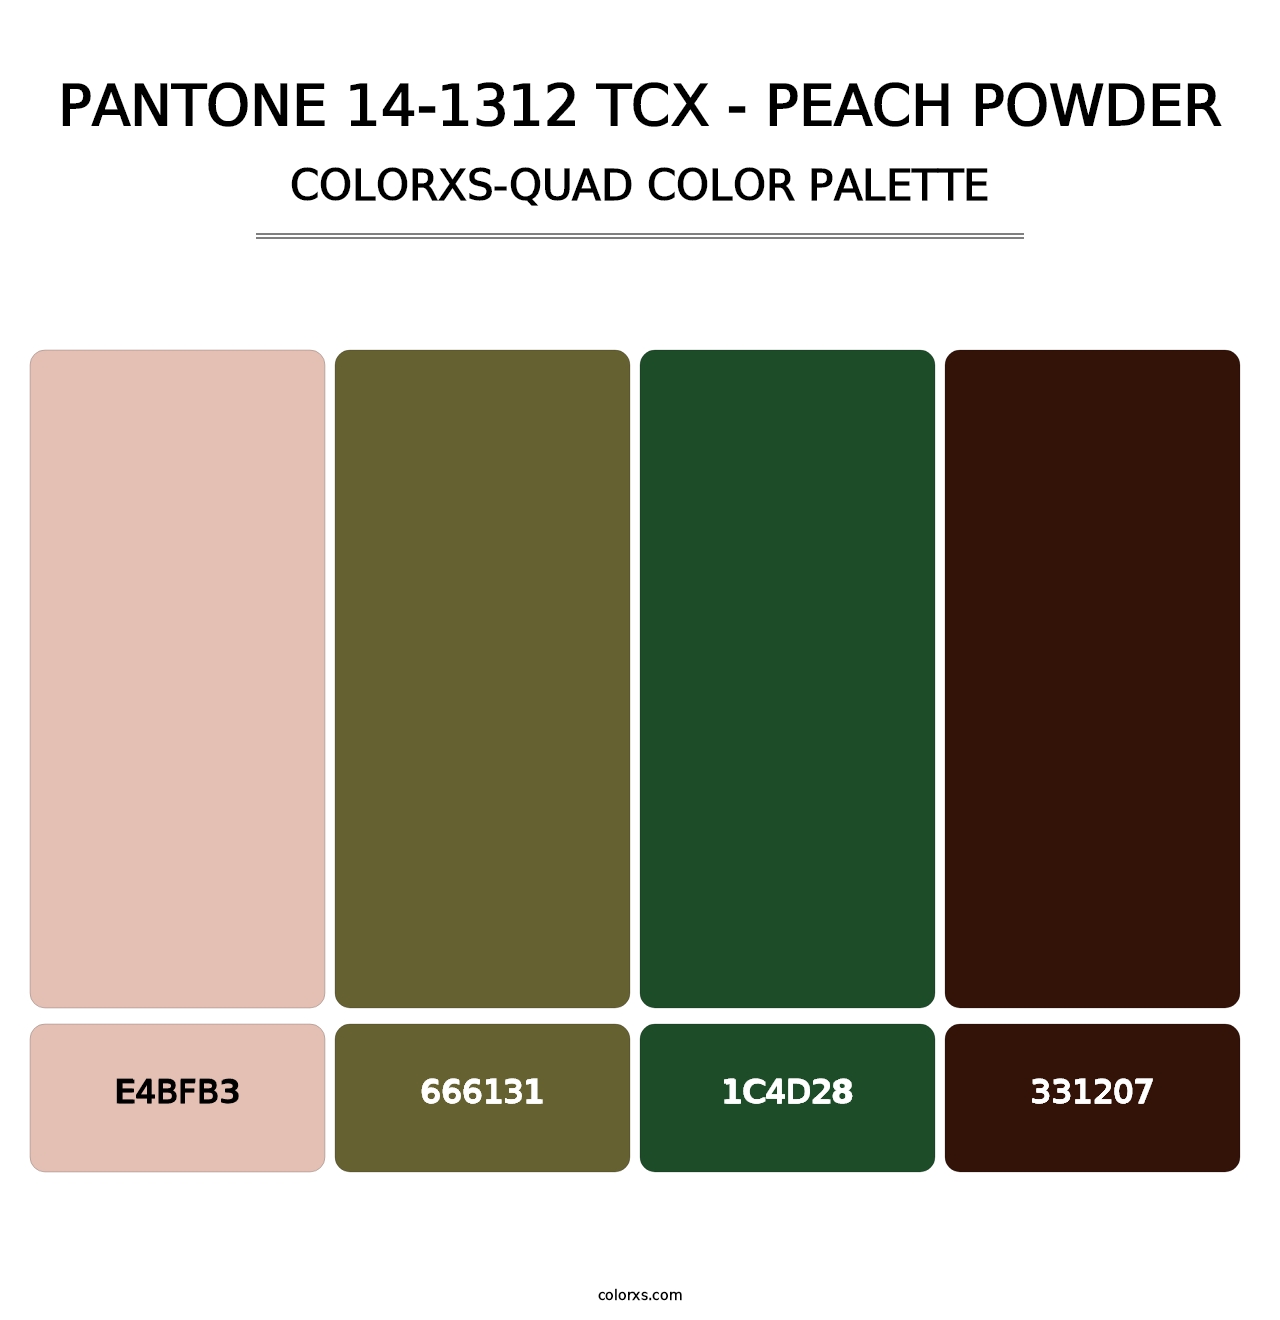 PANTONE 14-1312 TCX - Peach Powder - Colorxs Quad Palette